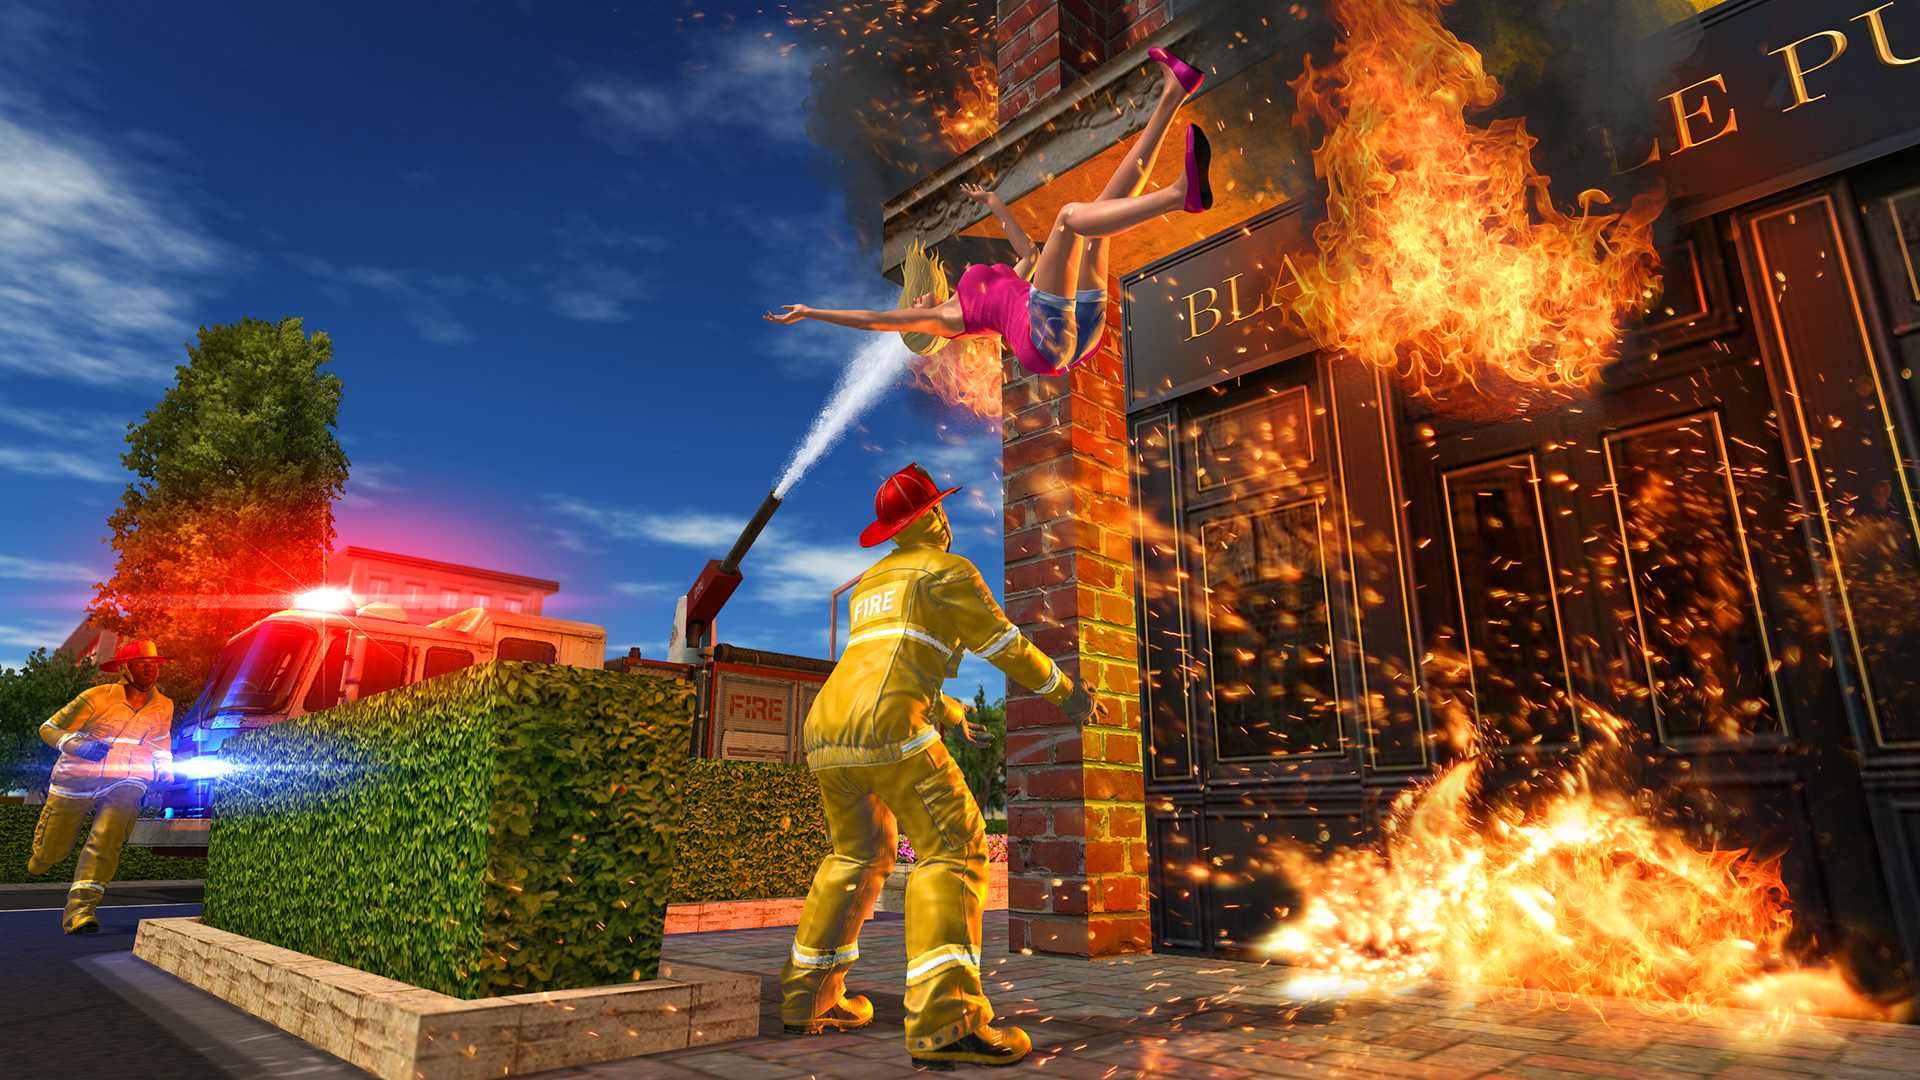 Screenshot 1 of 消防車遊戲 1.1.0